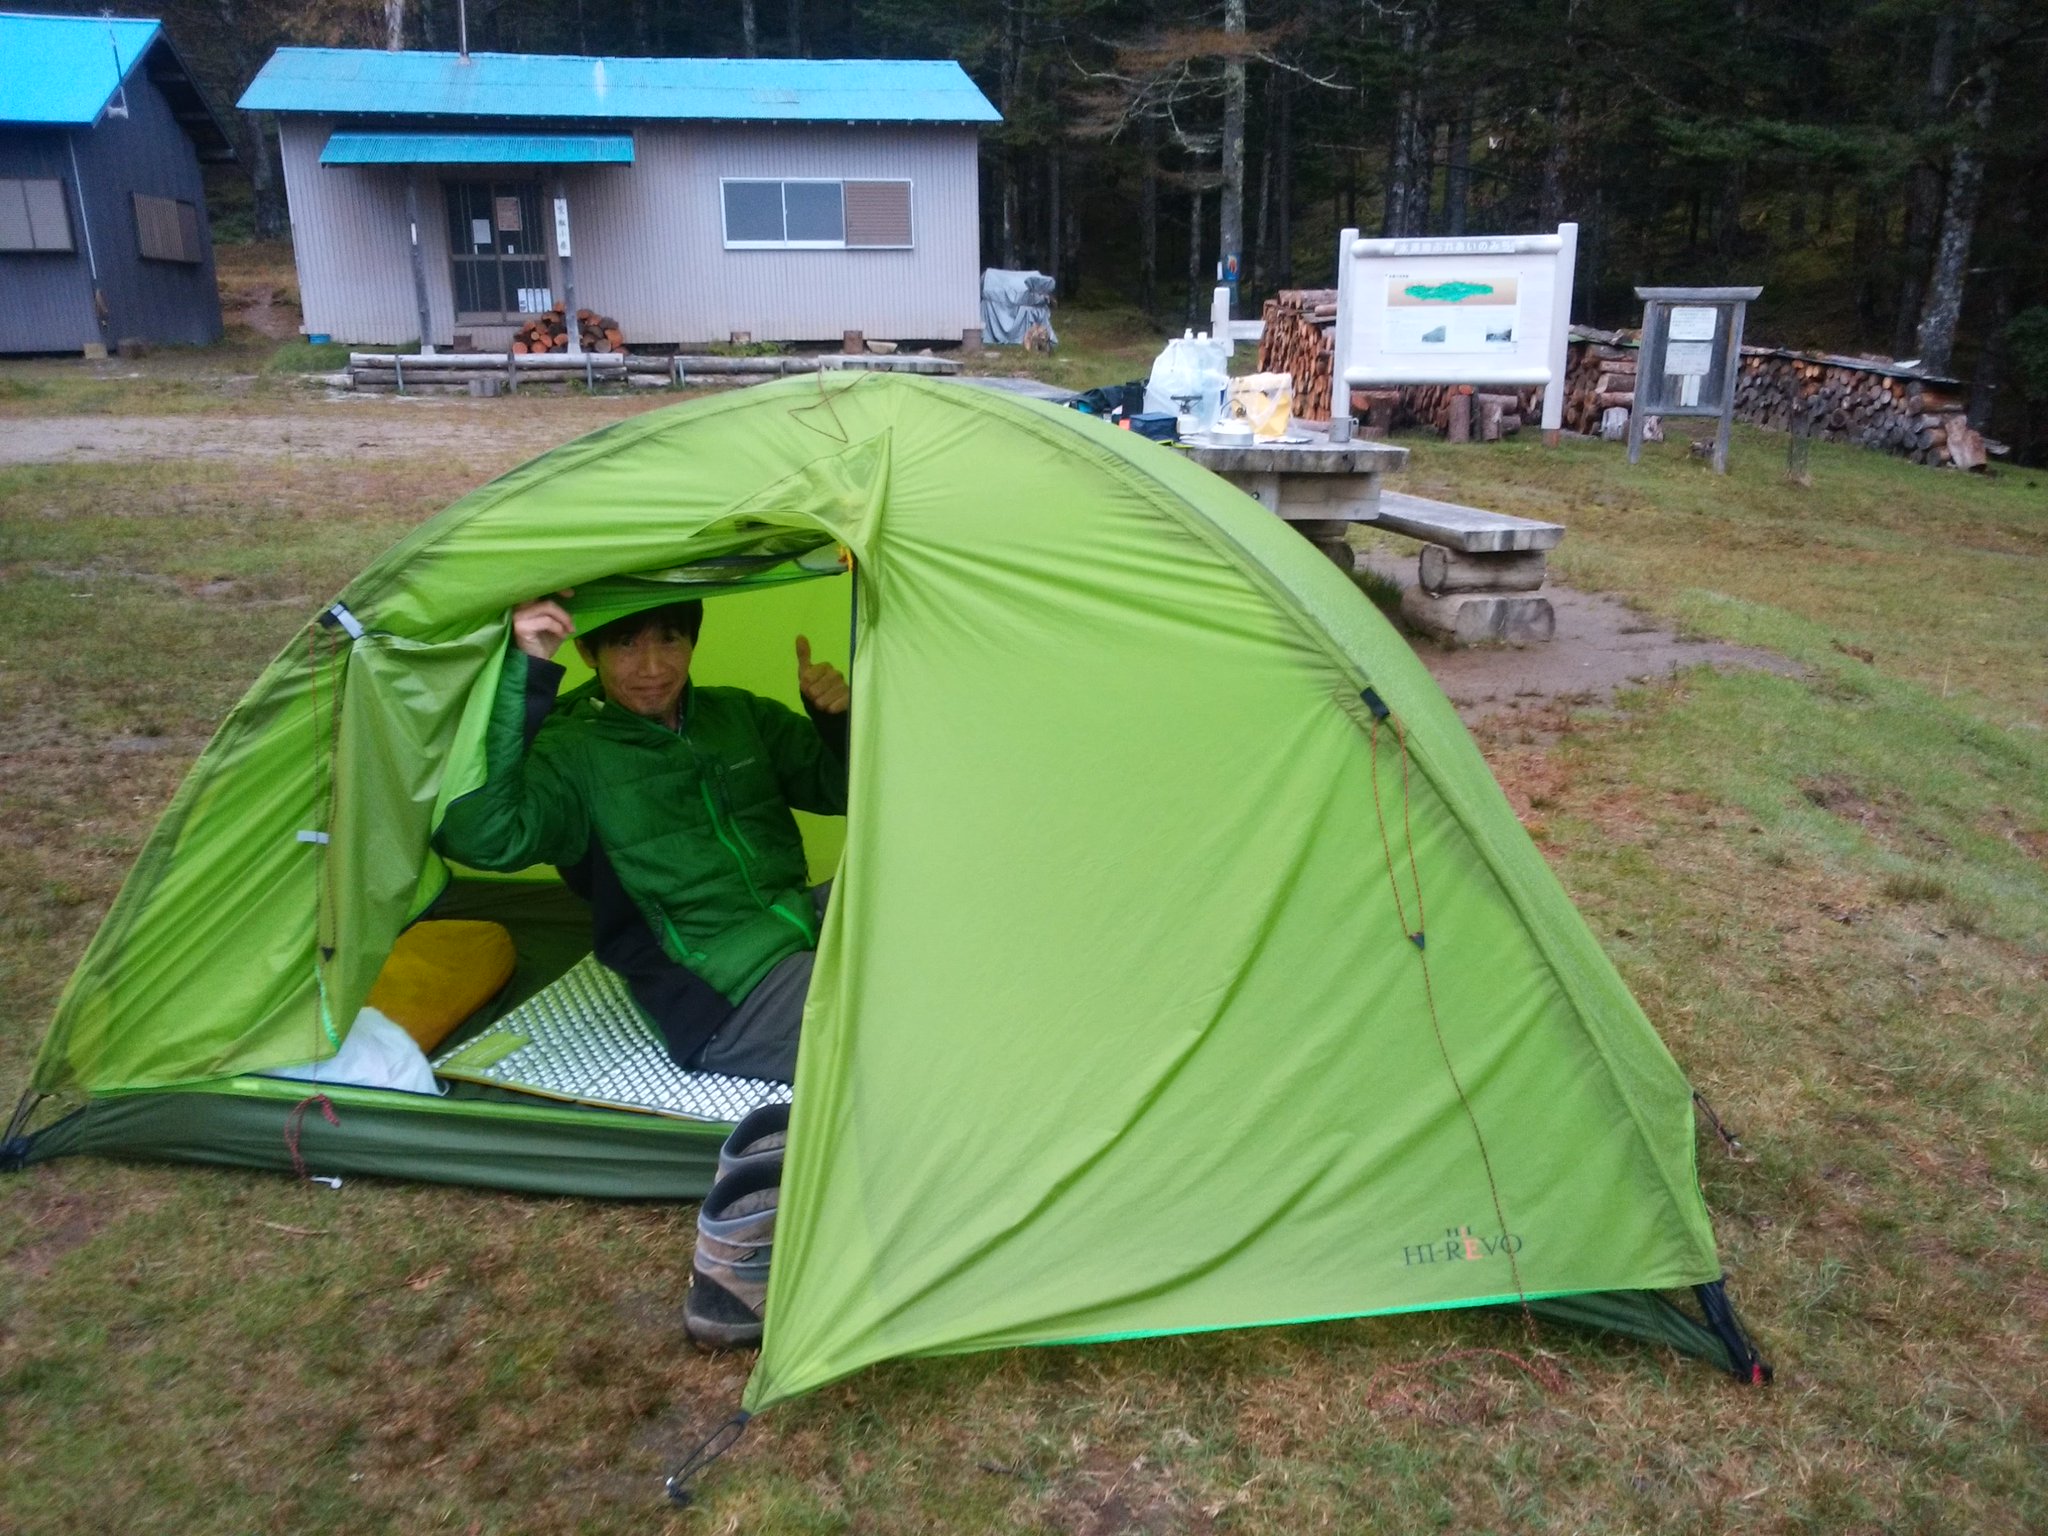 池田和也 かずやっこ on Twitter "初めてのお山テント泊の条件は・・・ 山の美味しい水場が近いこと 登